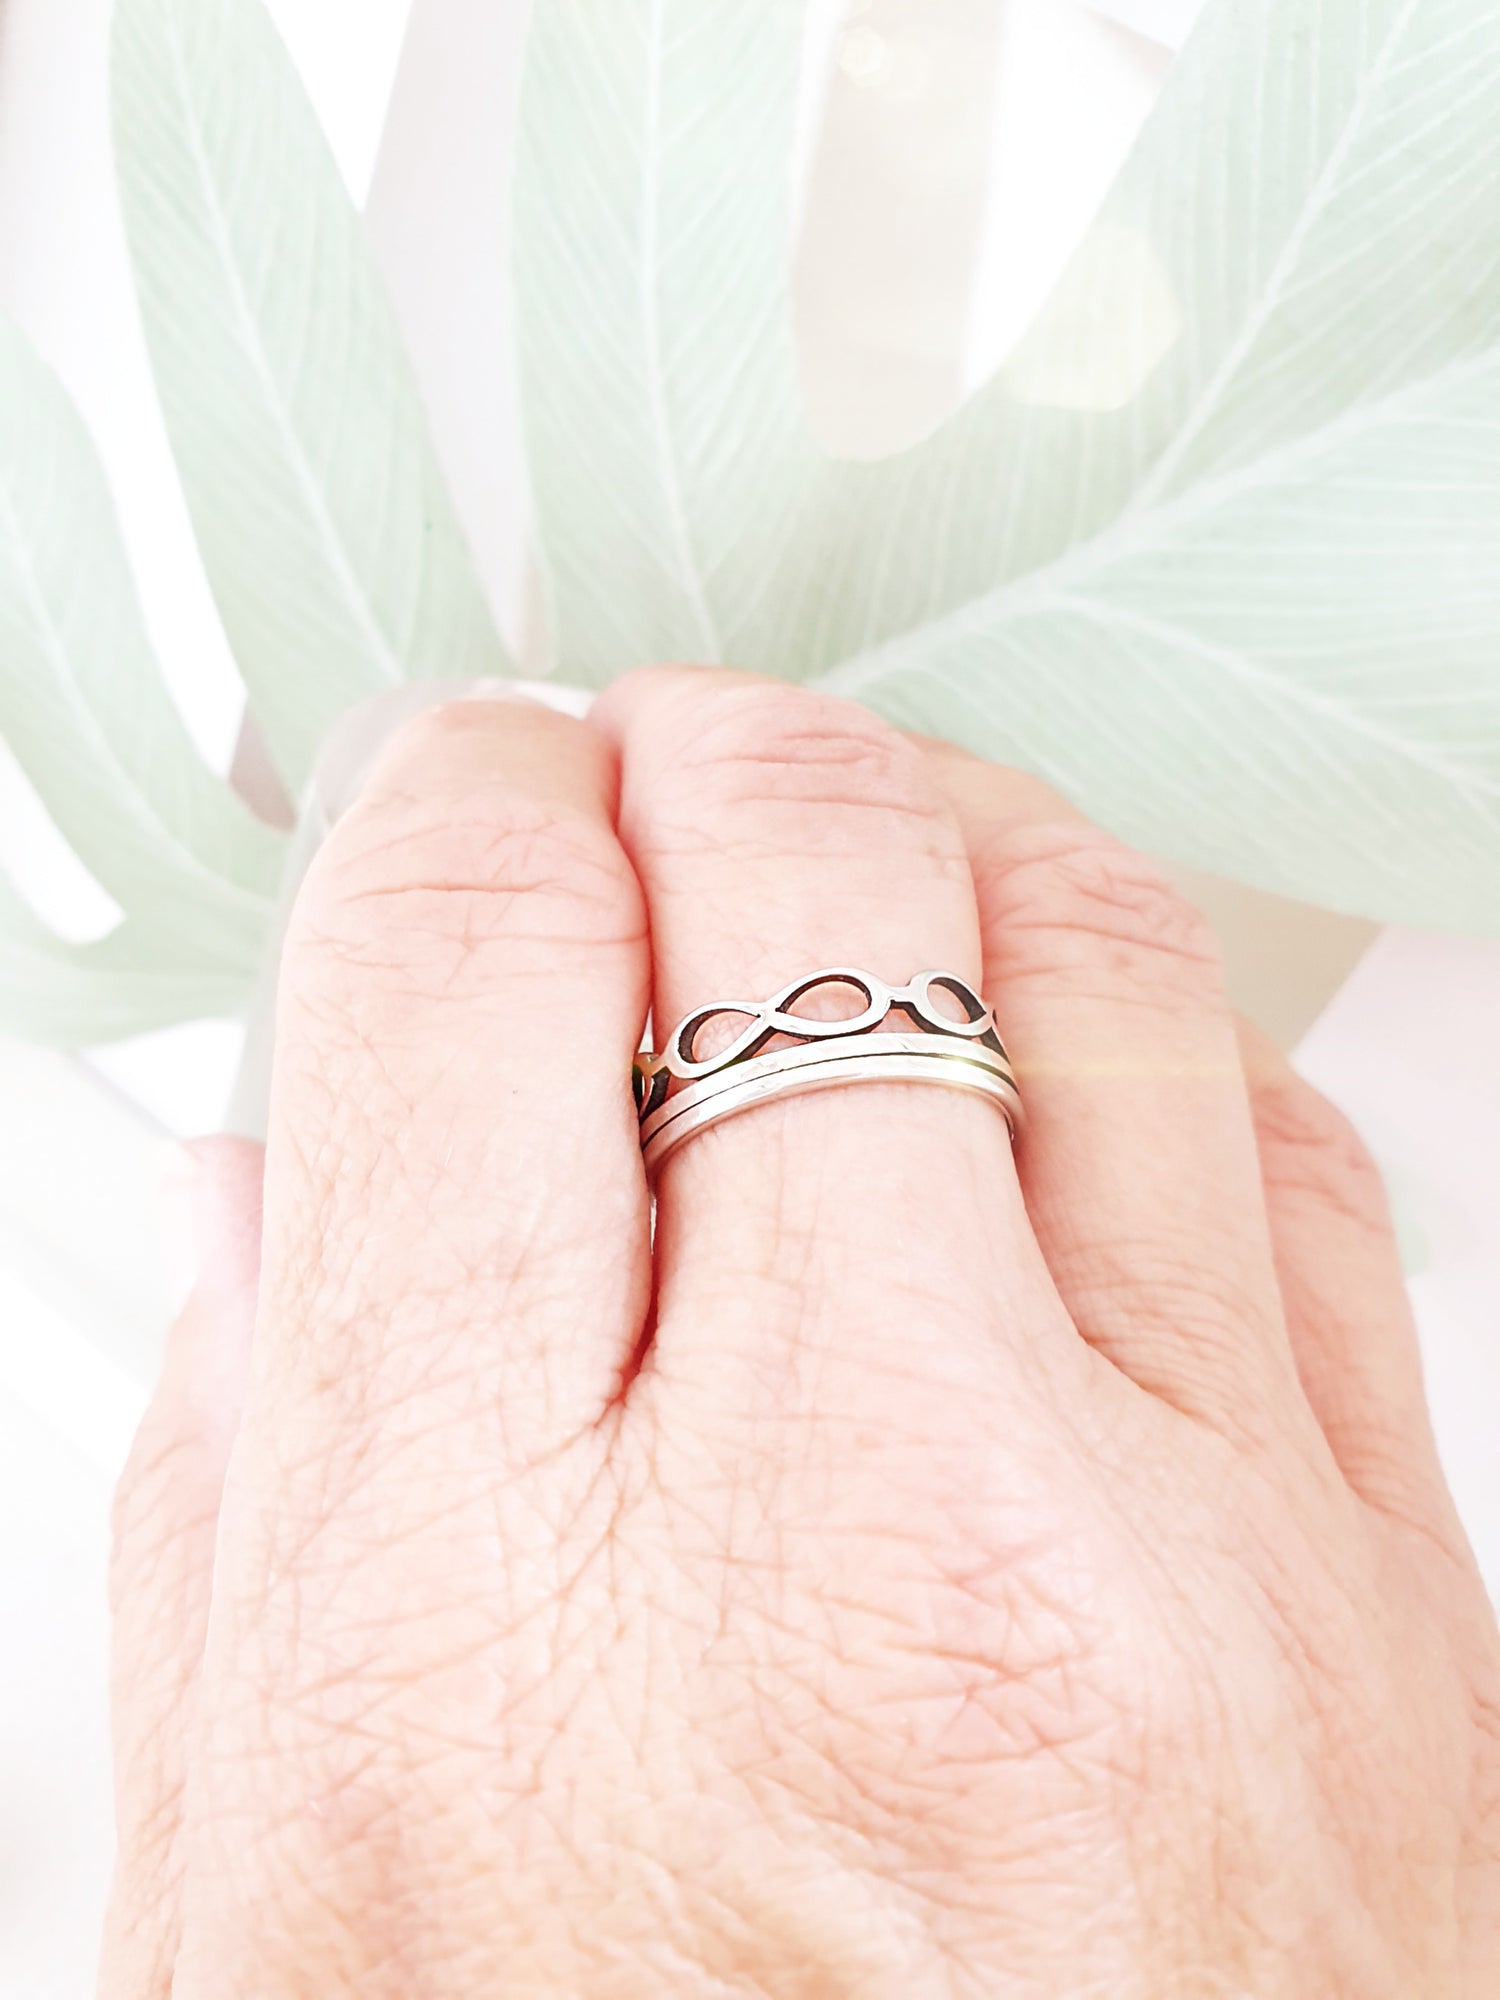 Edelstahl-Ring mit Unendlich Zeichen Silber Tragefoto